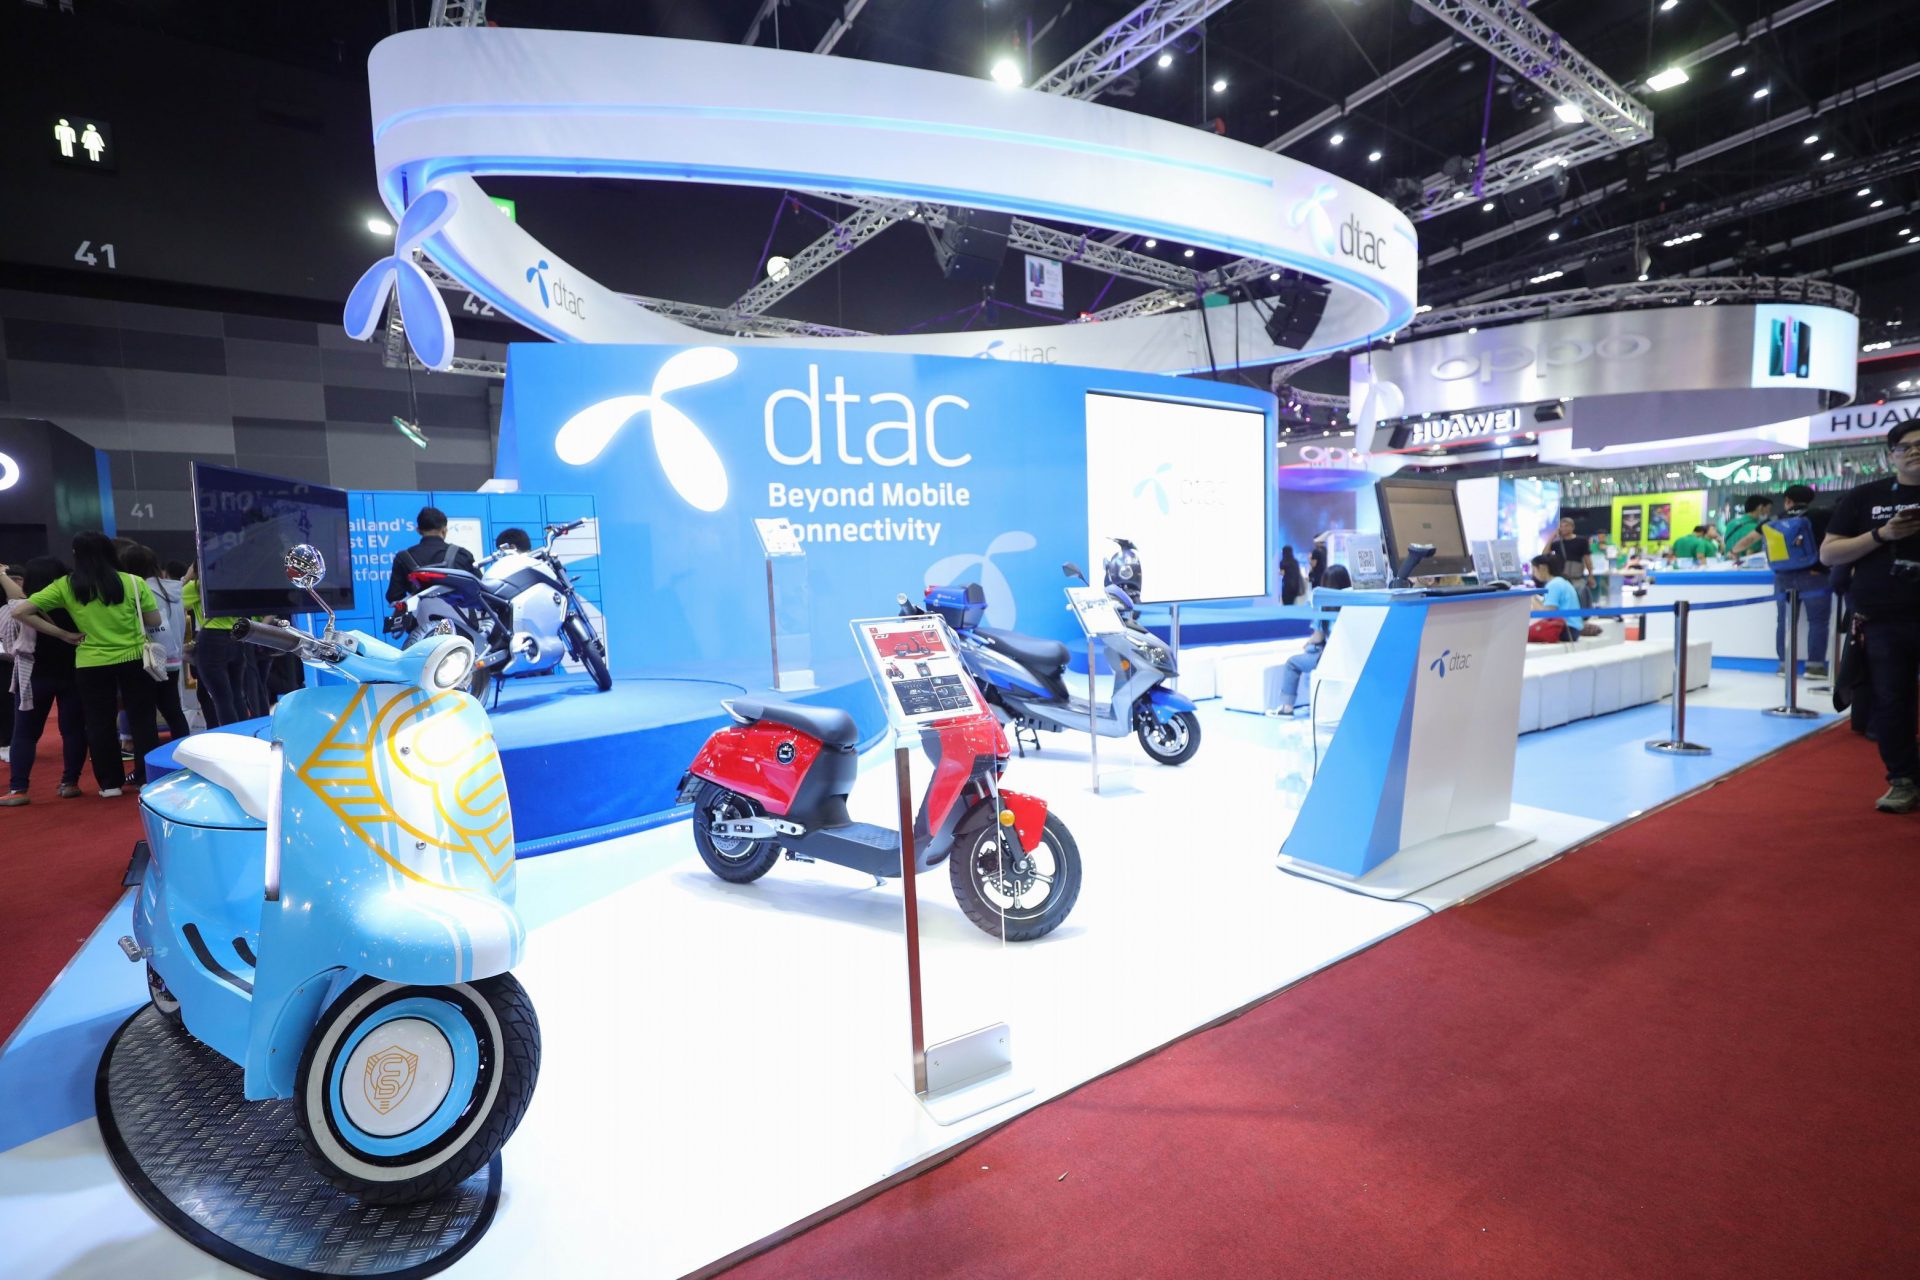 Dtac เปิดตัวแพลตฟอร์มรถมอเตอร์ไซค์ไฟฟ้าแบบครบวงจร ในงาน Thailand Mobile Expo 2019